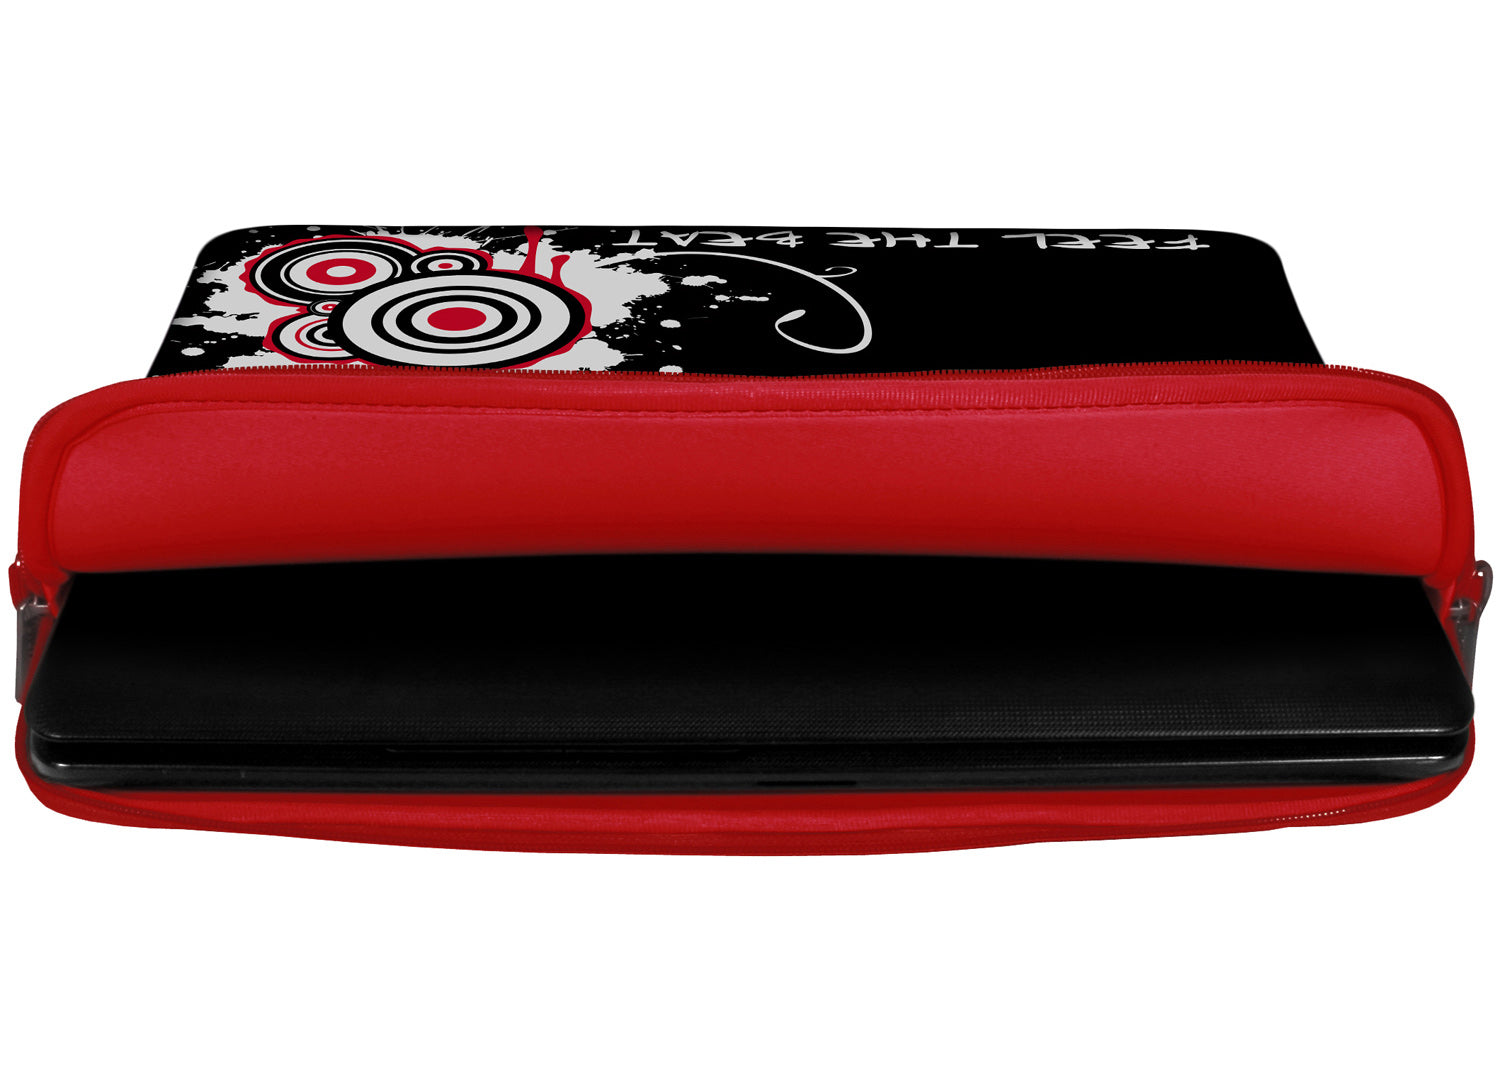 Innenansicht mit Schutzlippen der LS163-15 Black Beat Designer Laptop Tasche in rot aus wasserabweisendem Neopren